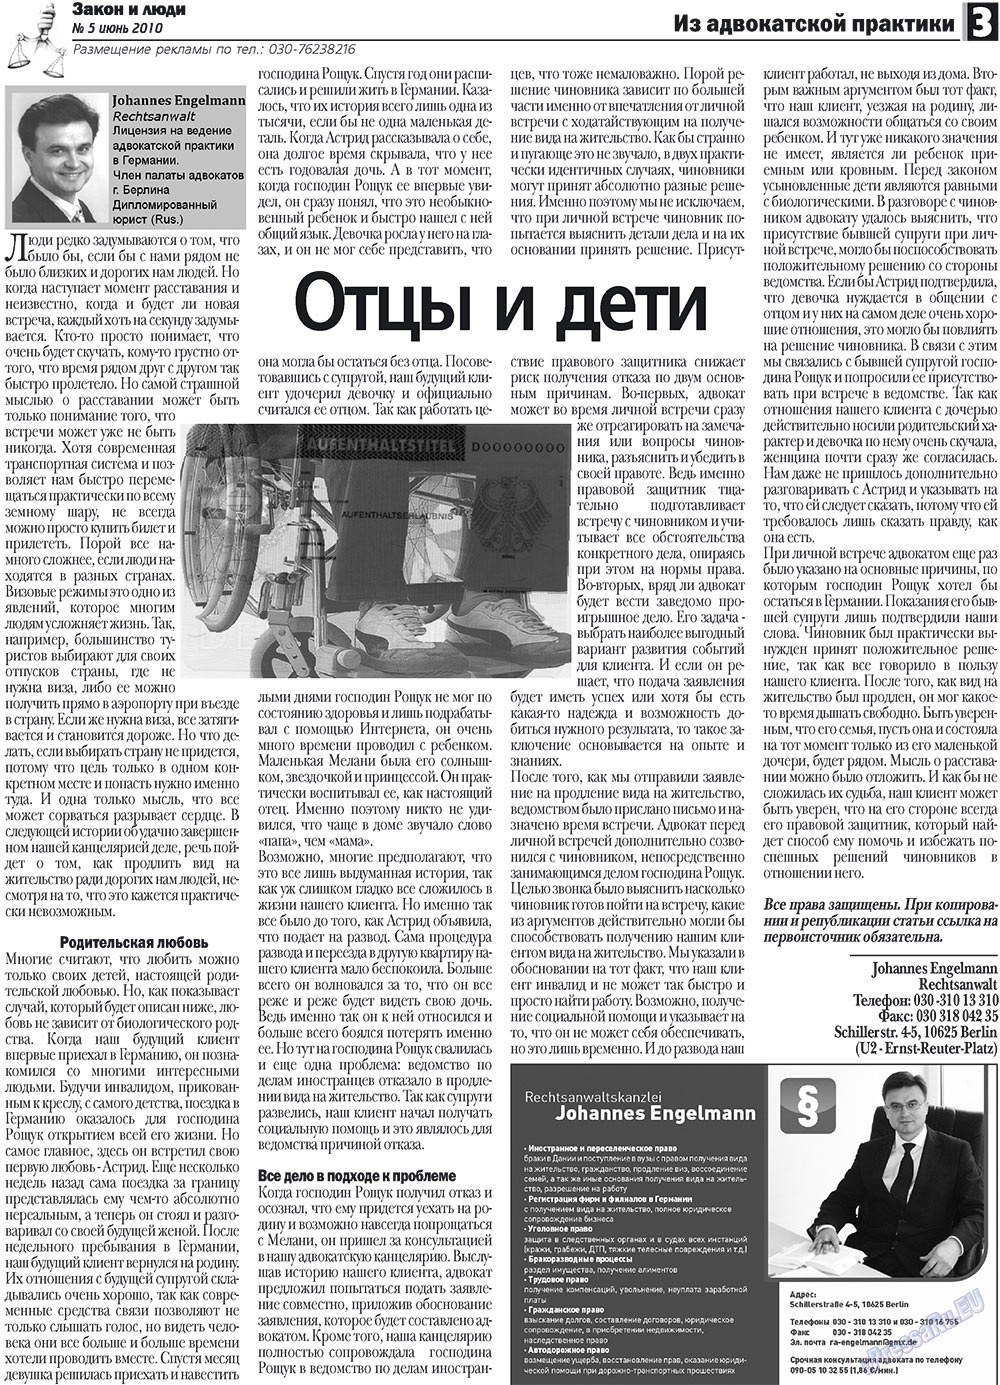 Закон и люди, газета. 2010 №5 стр.3